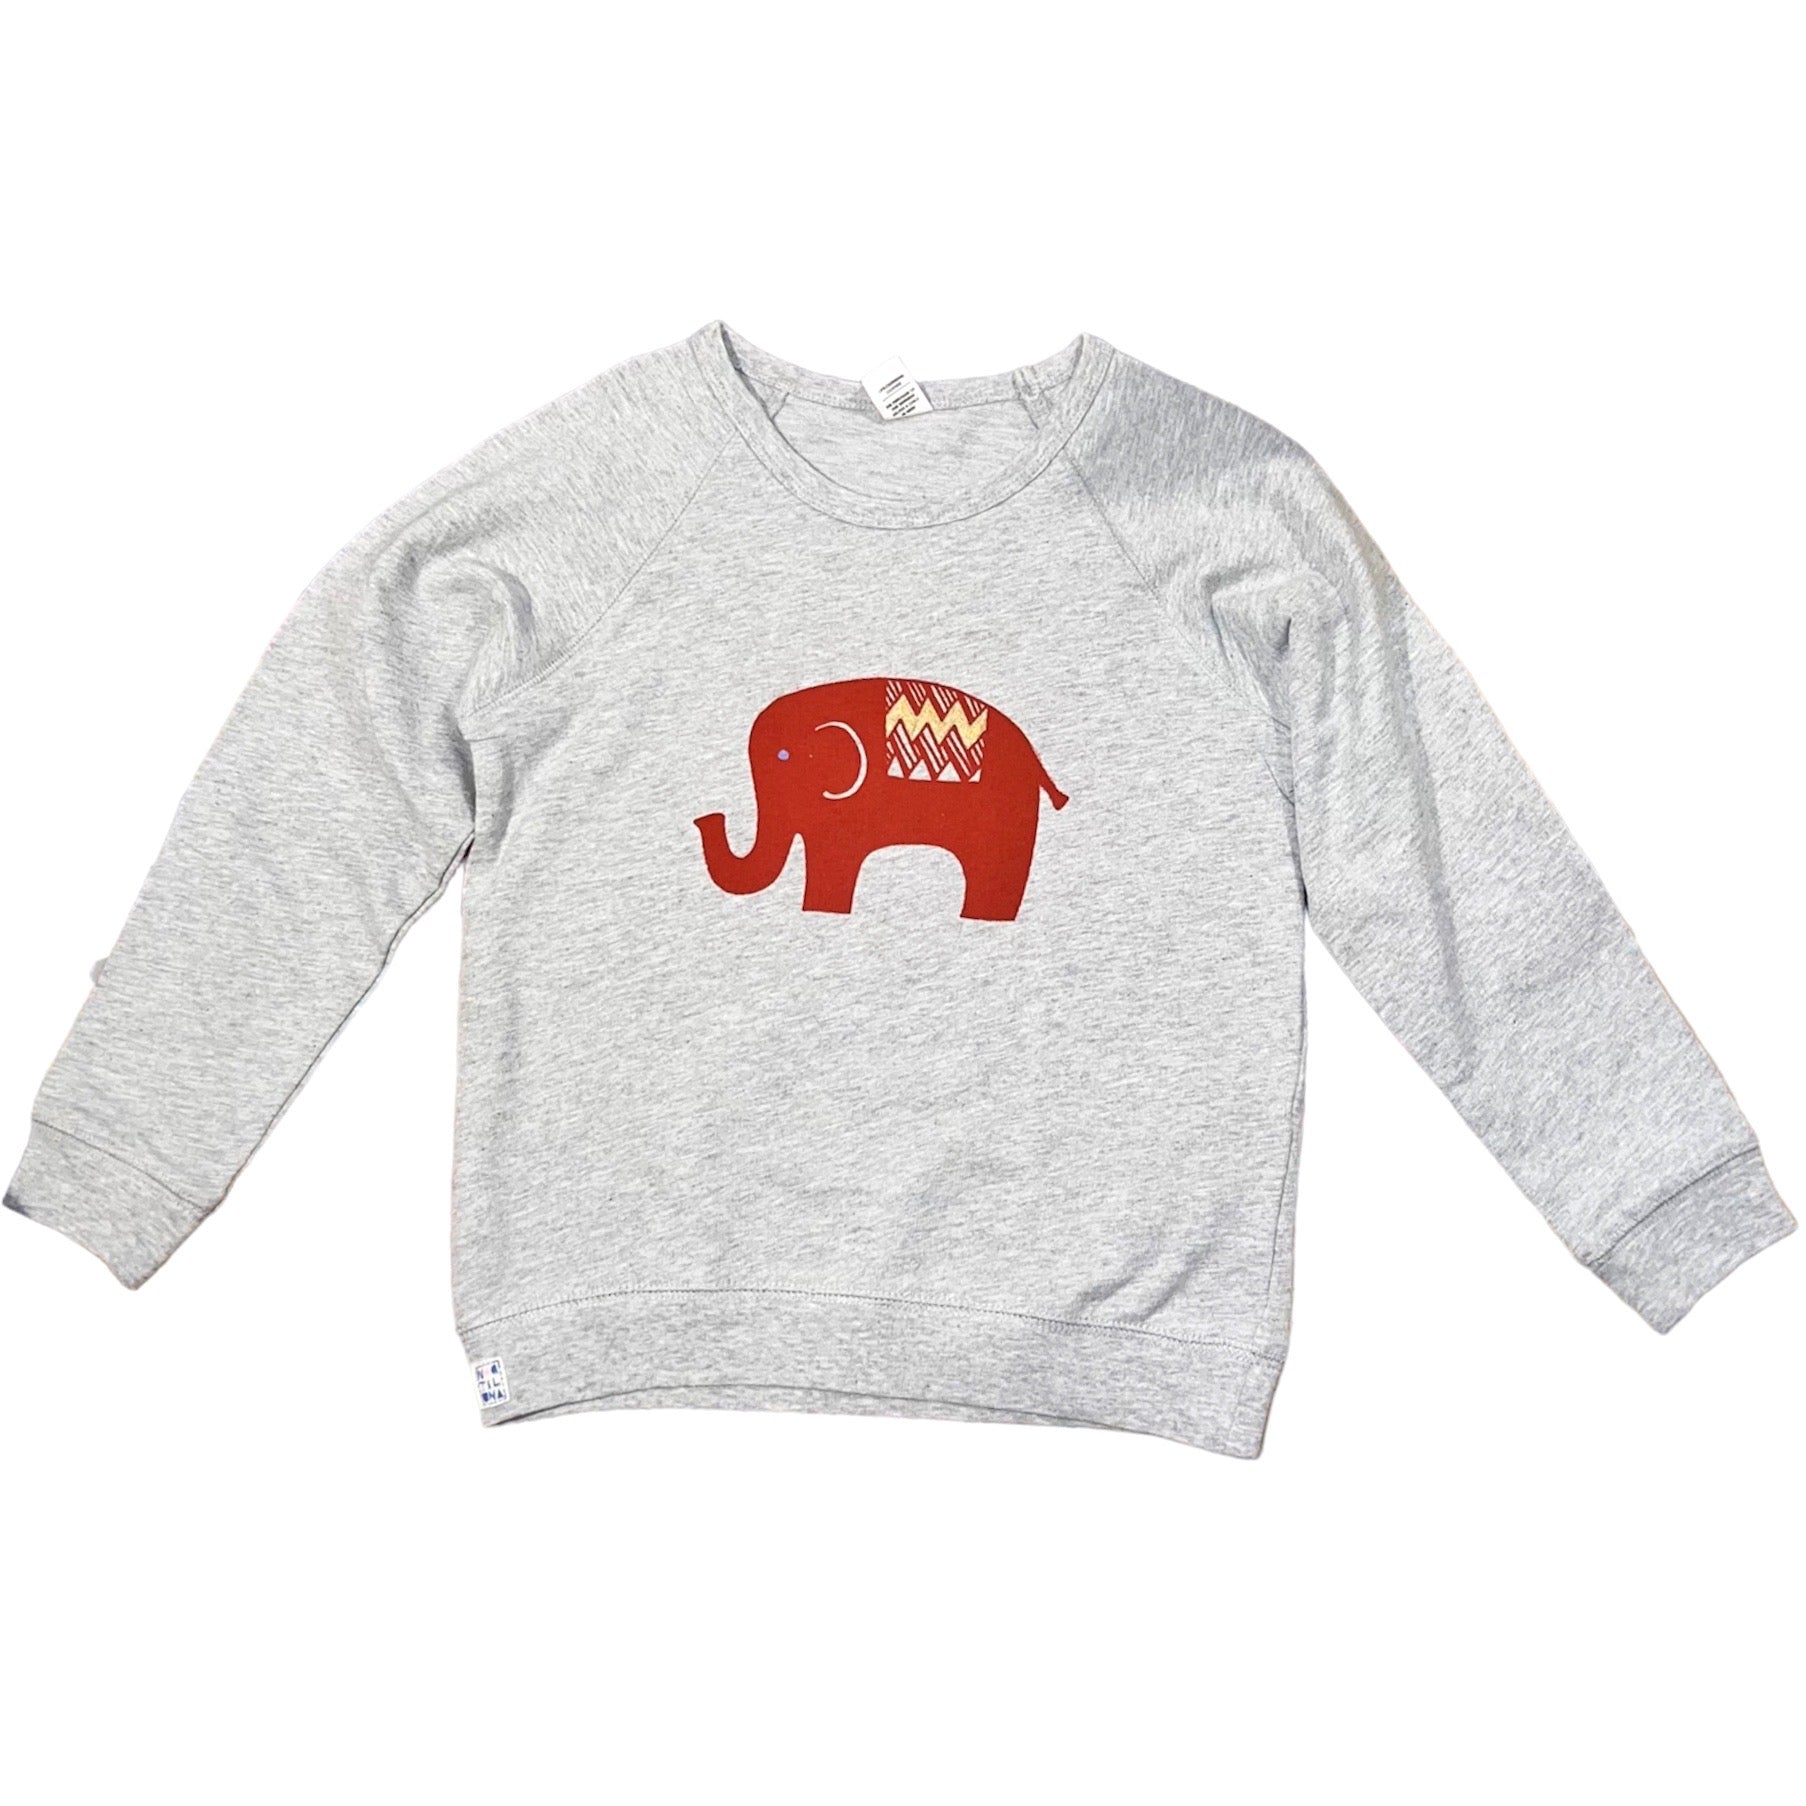 Kids Sweatshirt - Elephant - Long Sleeve - Gray